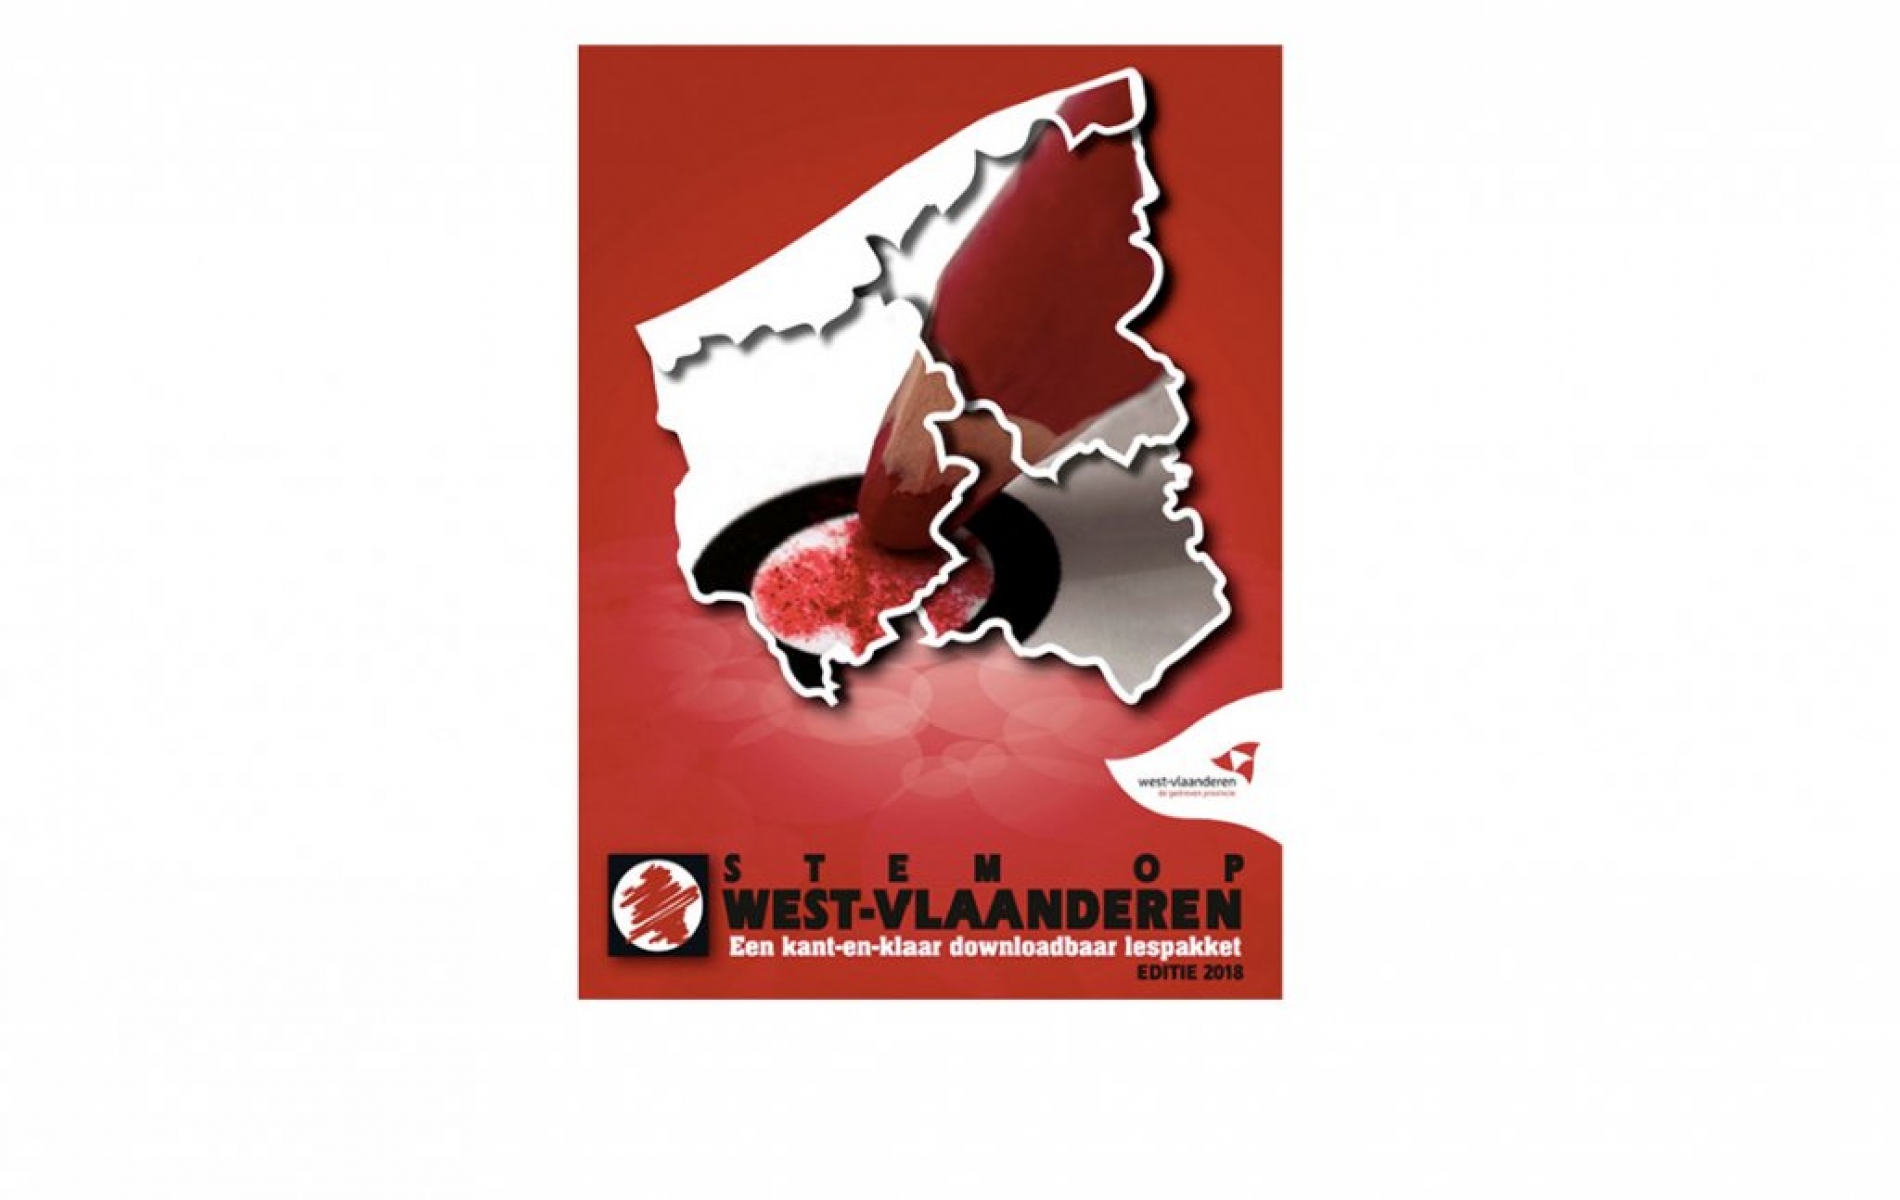 Stem op West-Vlaanderen